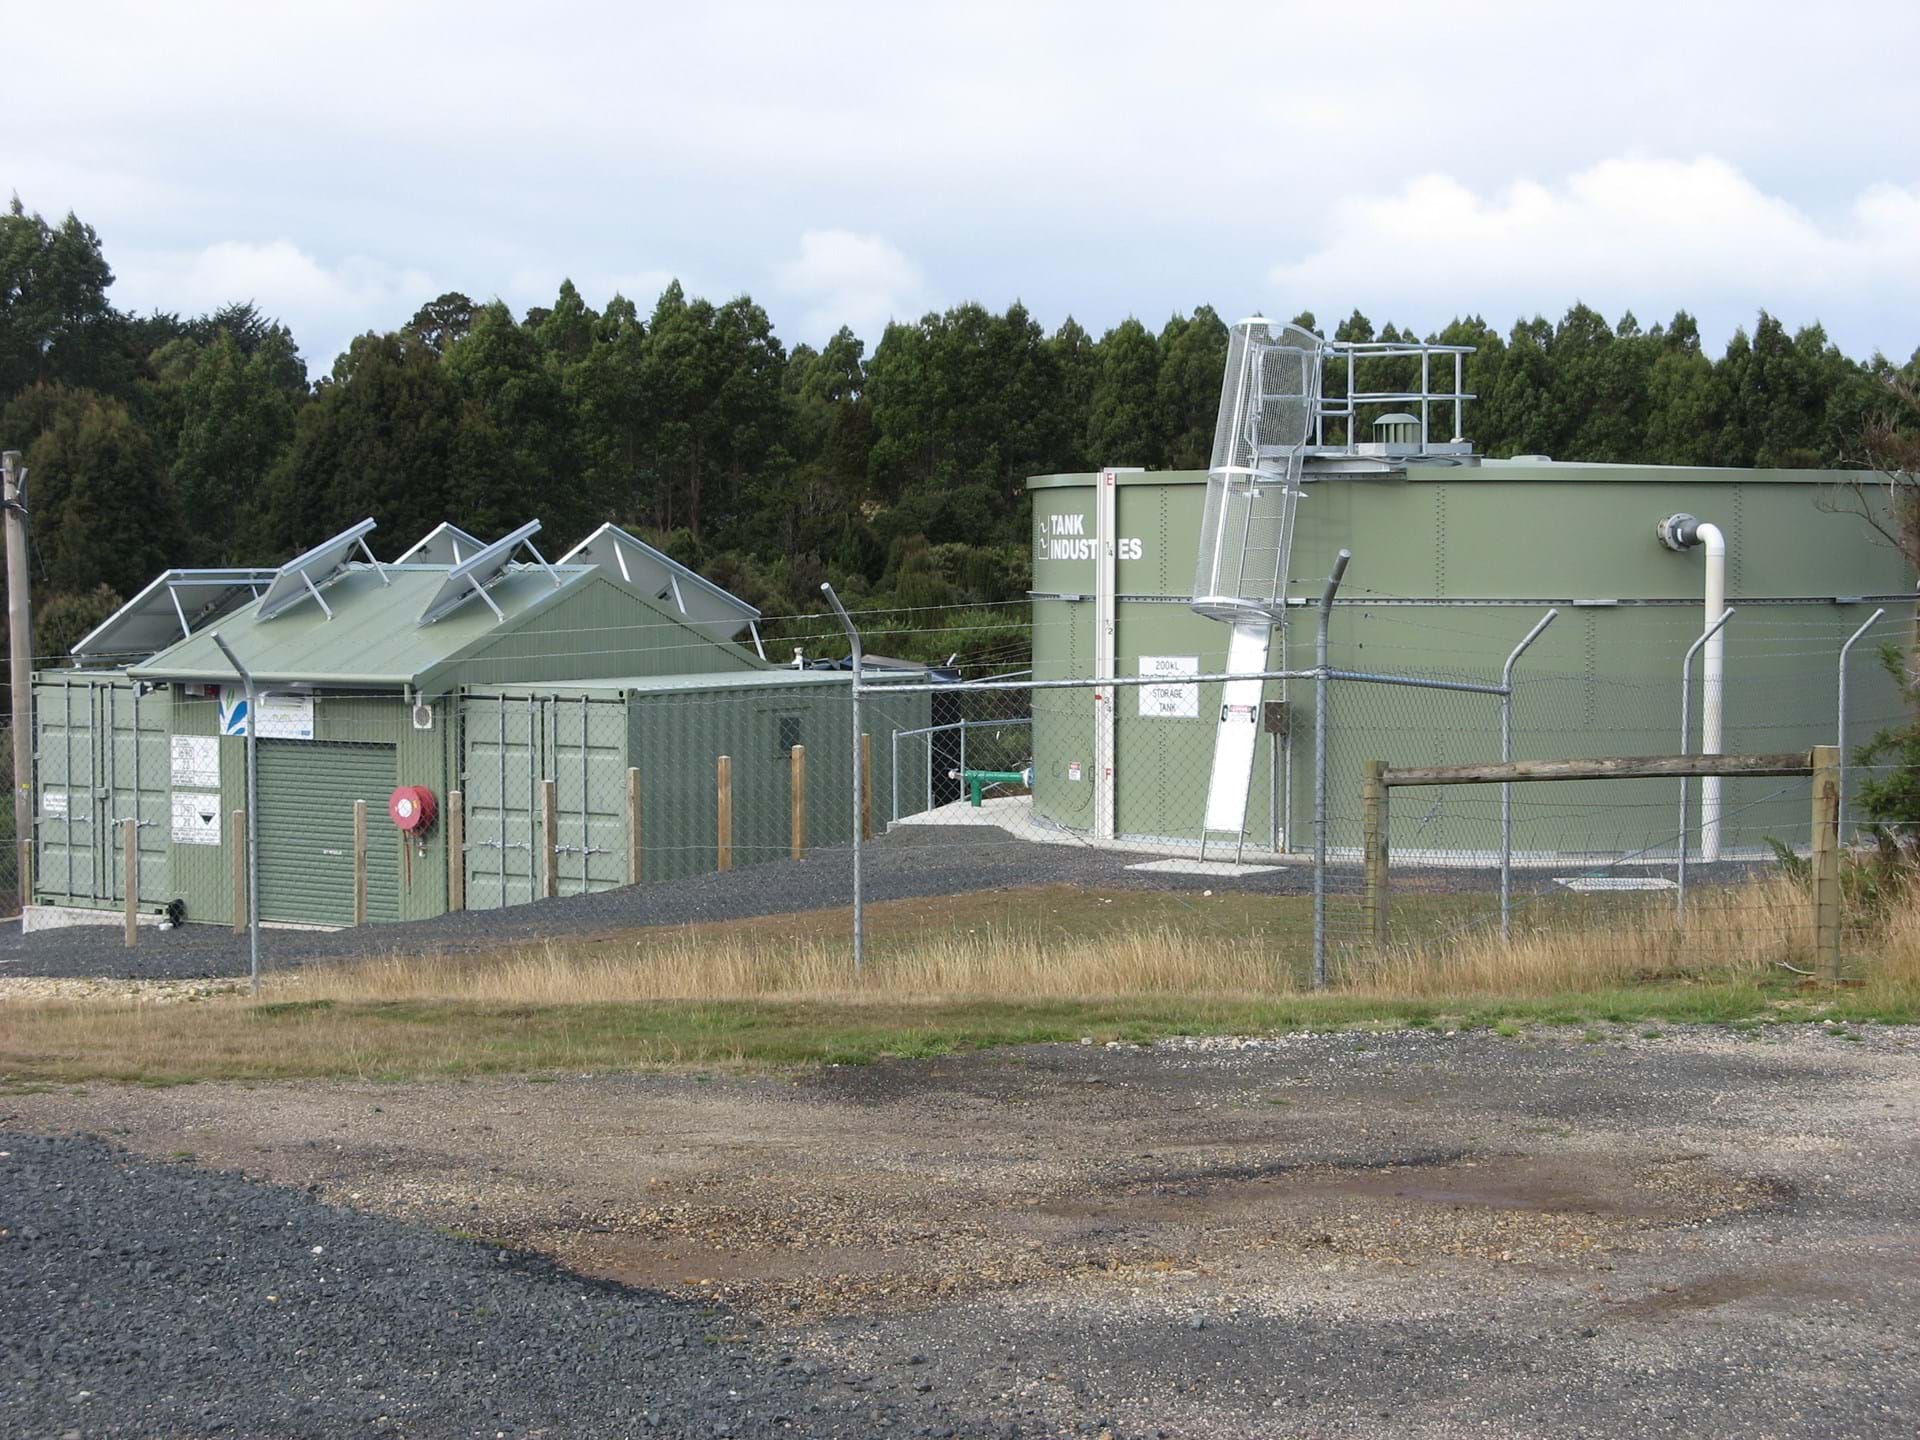 The new Water Treatment Plant in Waratah, Tasmania